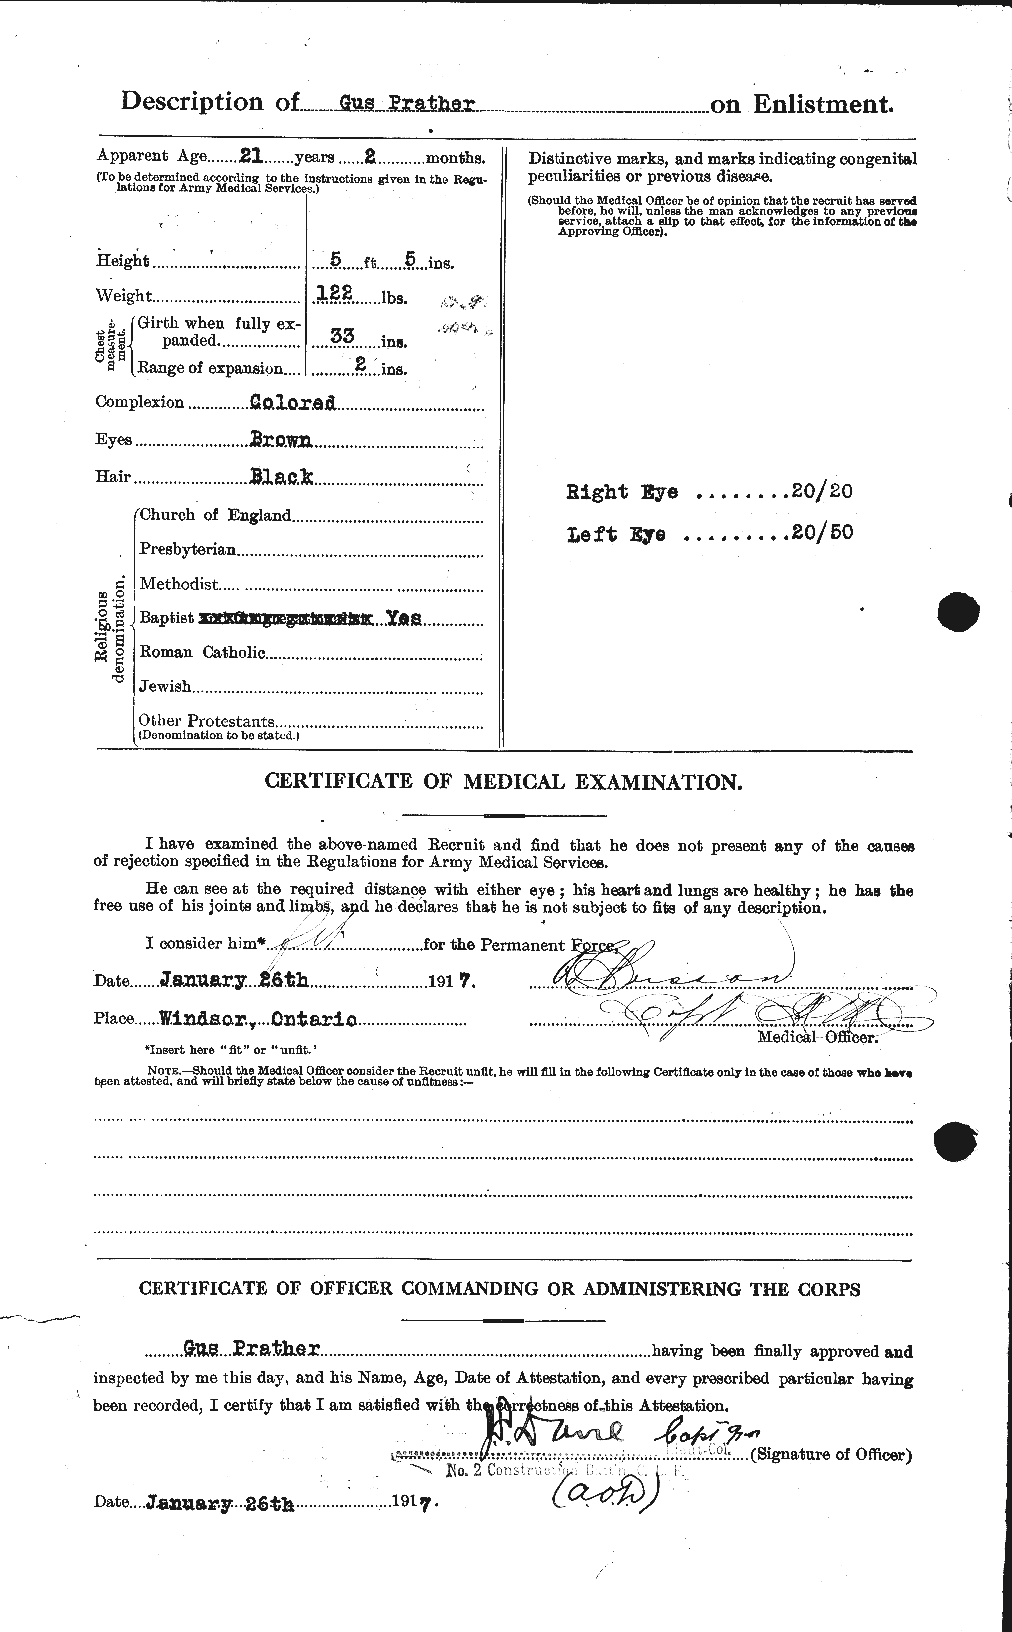 Dossiers du Personnel de la Première Guerre mondiale - CEC 586606b